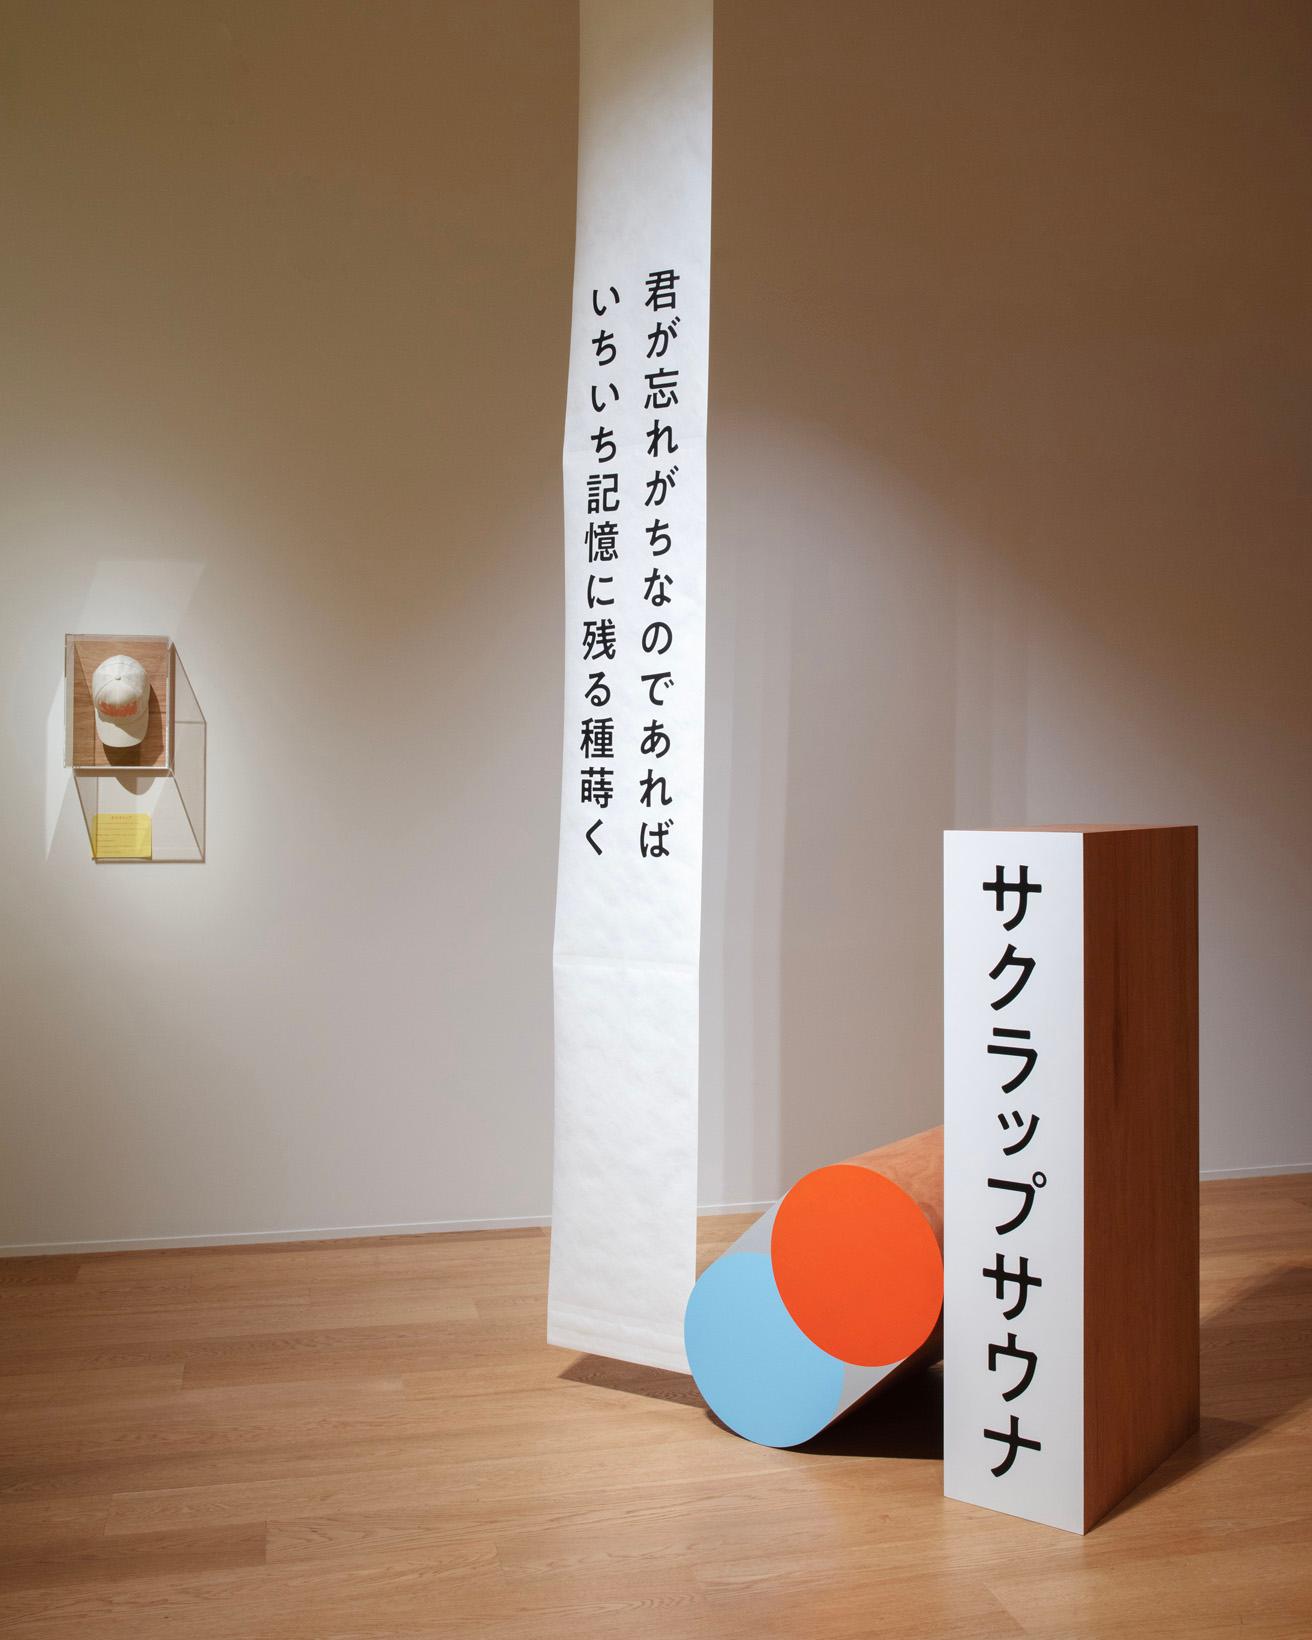 櫻井さんのラップ詞をカタチにした展示。